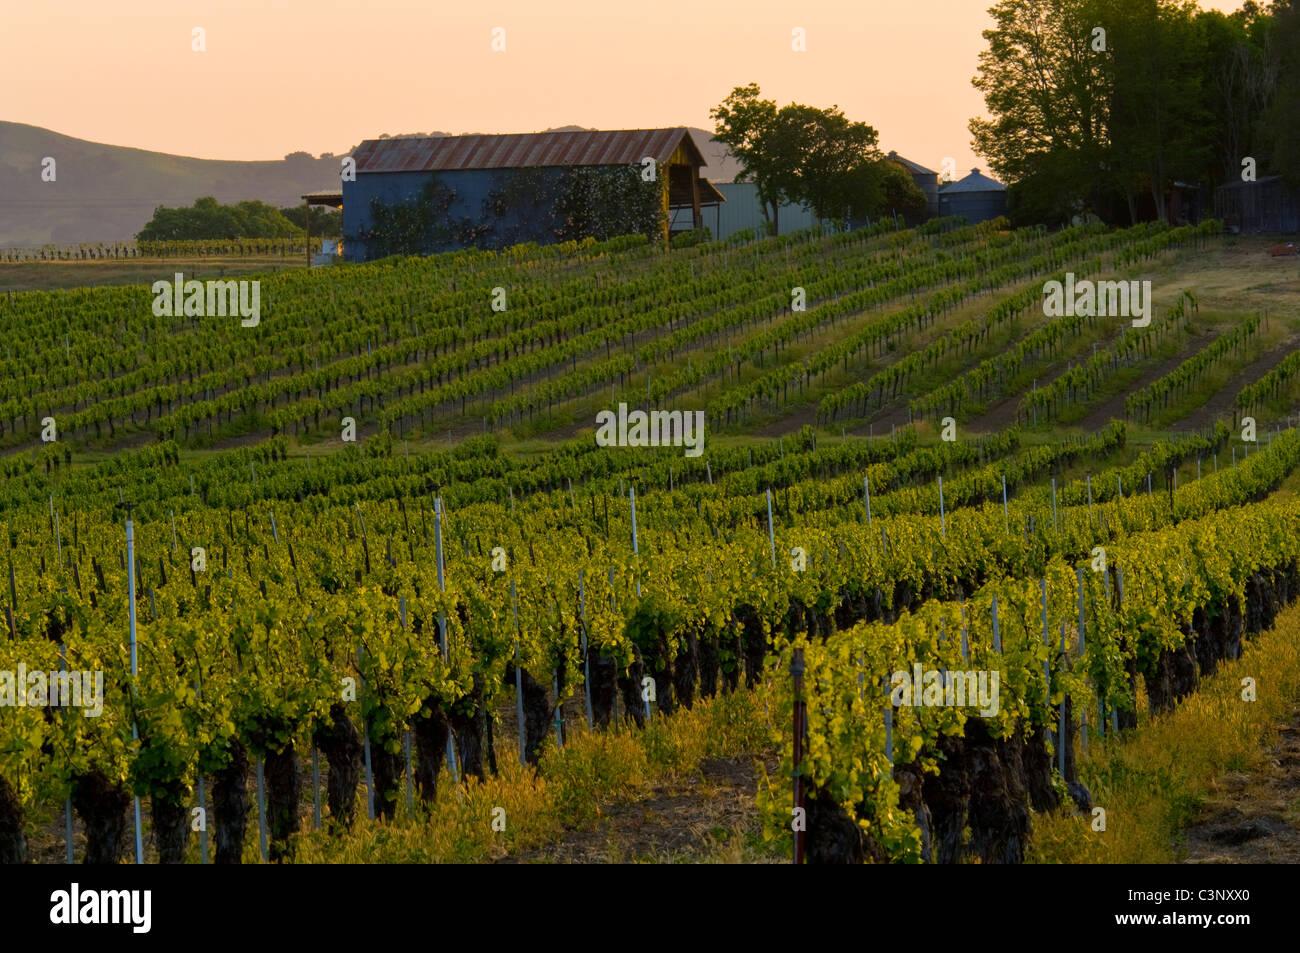 Wine grape vines in Vineyards in the Santa Ynez Valley, Santa Barbara County, California Stock Photo